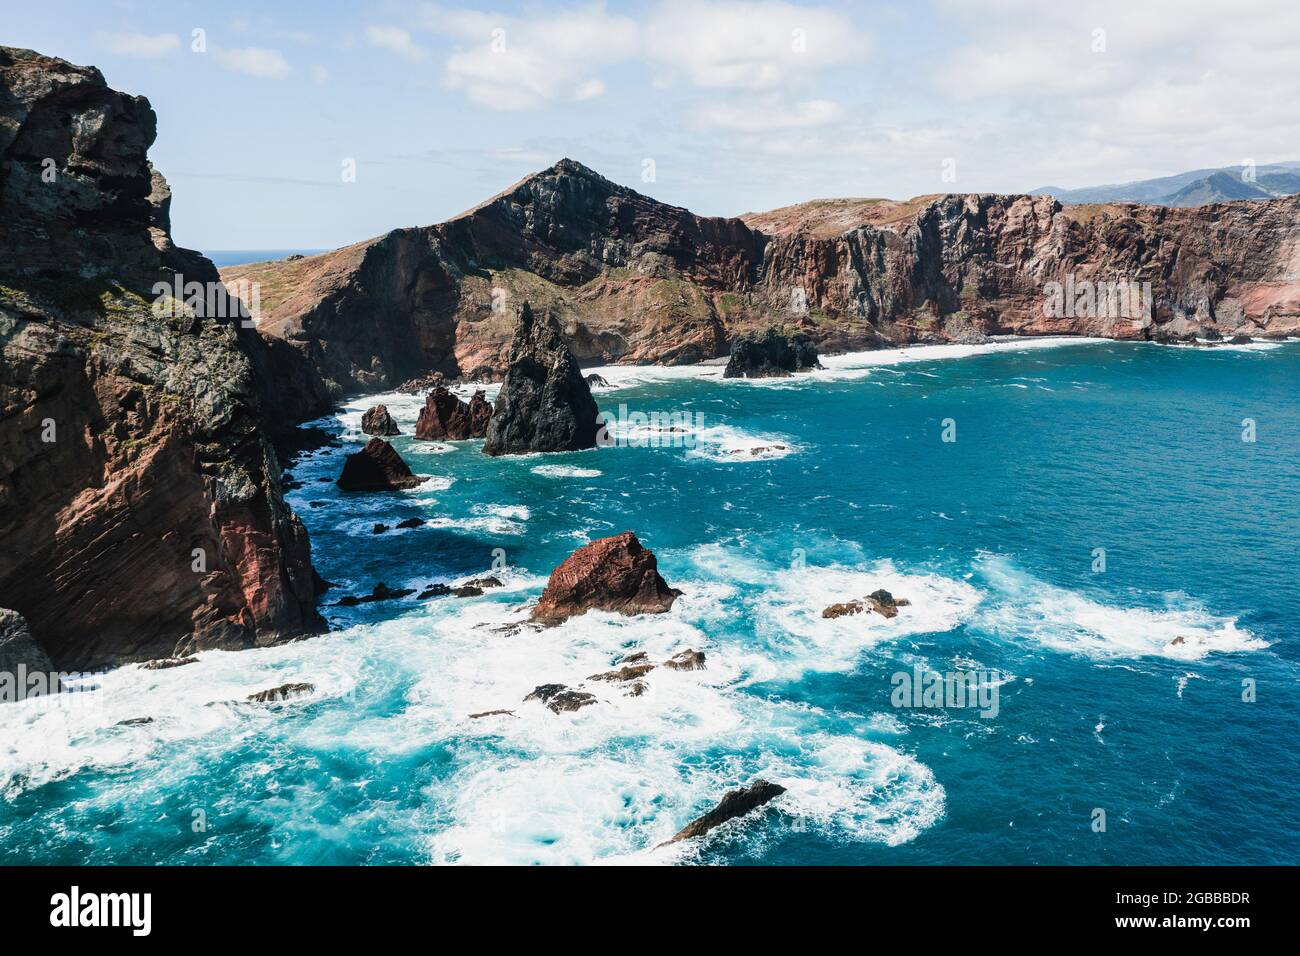 Onde dell'Oceano Atlantico che si infrangono su scogliere rocciose, penisola di Sao Lourenco, Canical, isola di Madeira, Portogallo, Europa Foto Stock